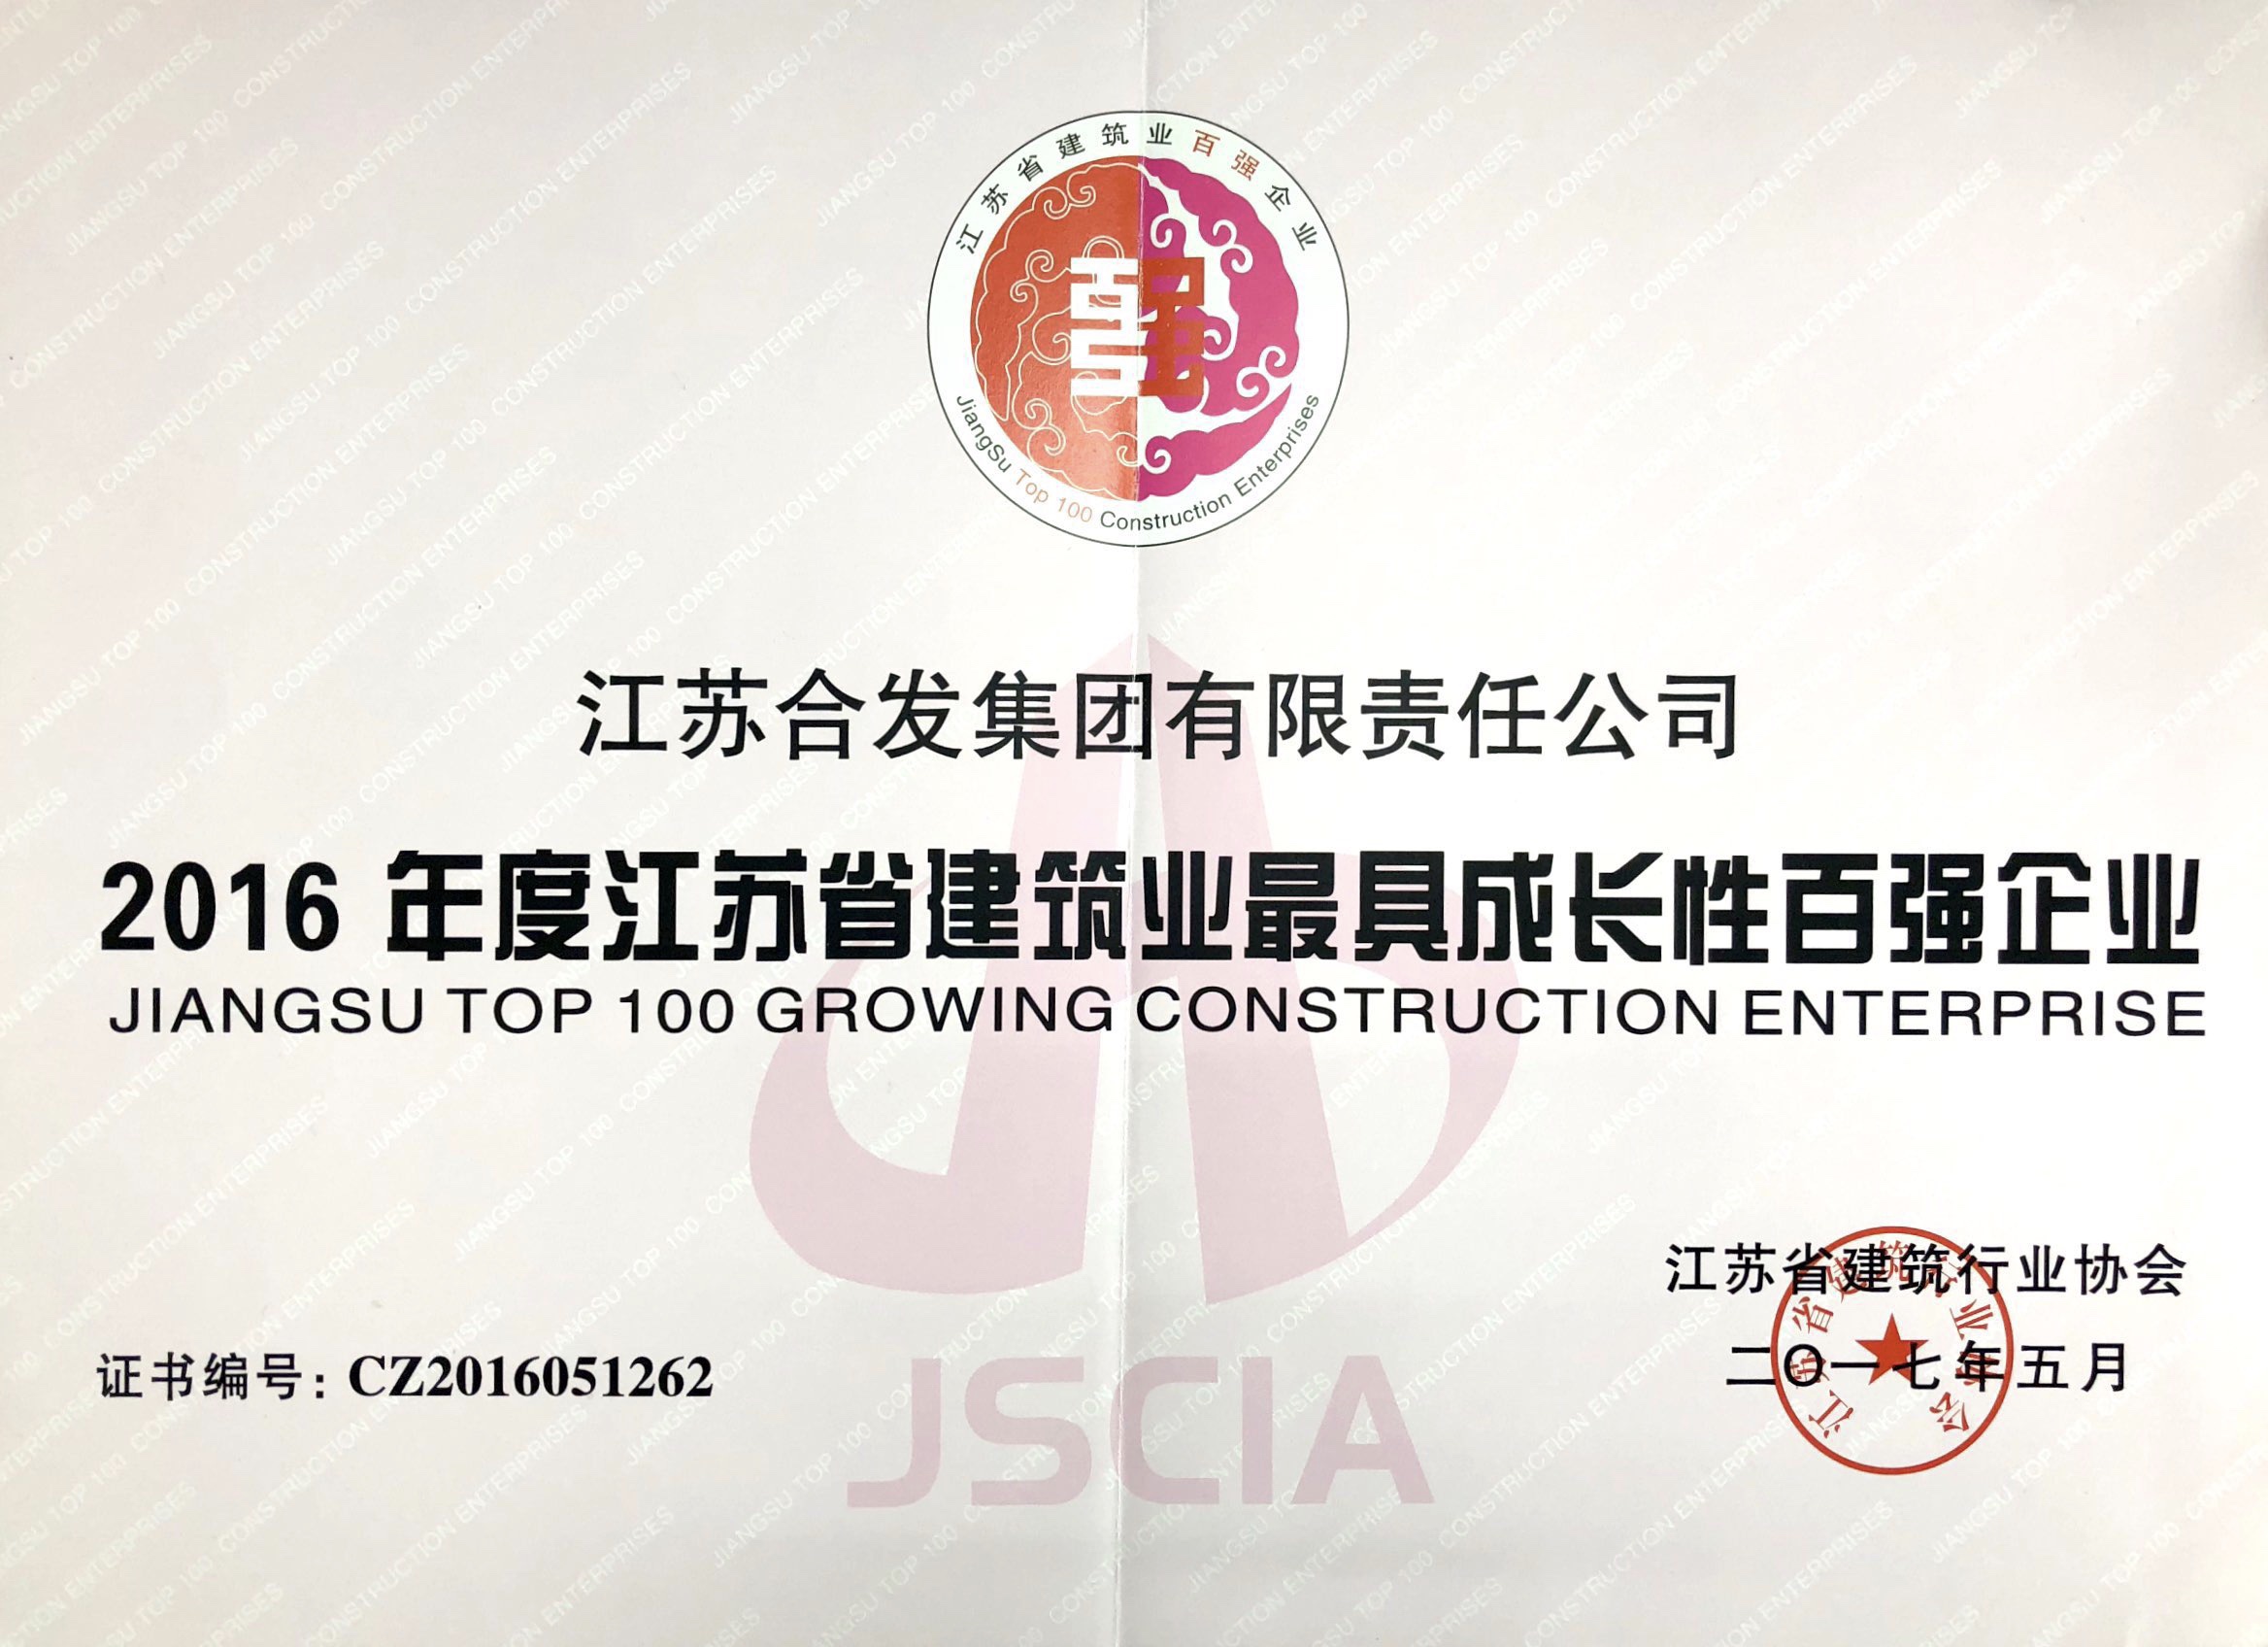 2016年度江蘇省建筑業最具成長性百強企業